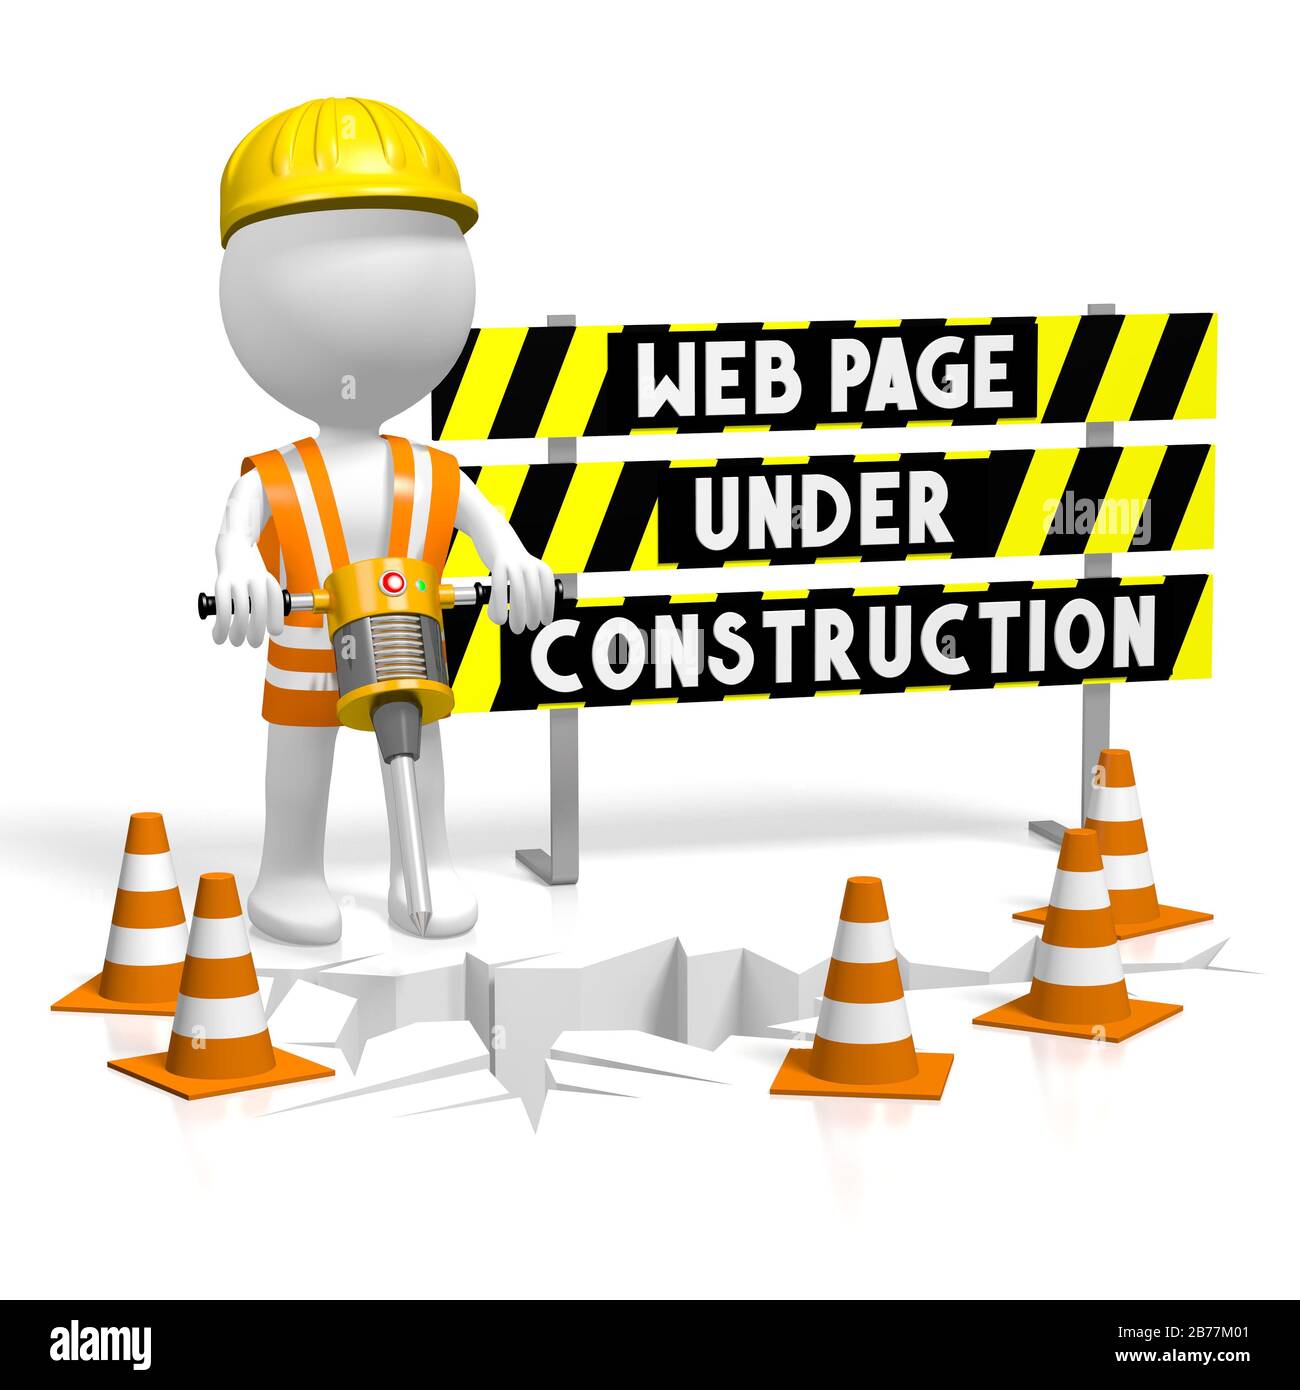 3D web page under construction concept Stock Photo